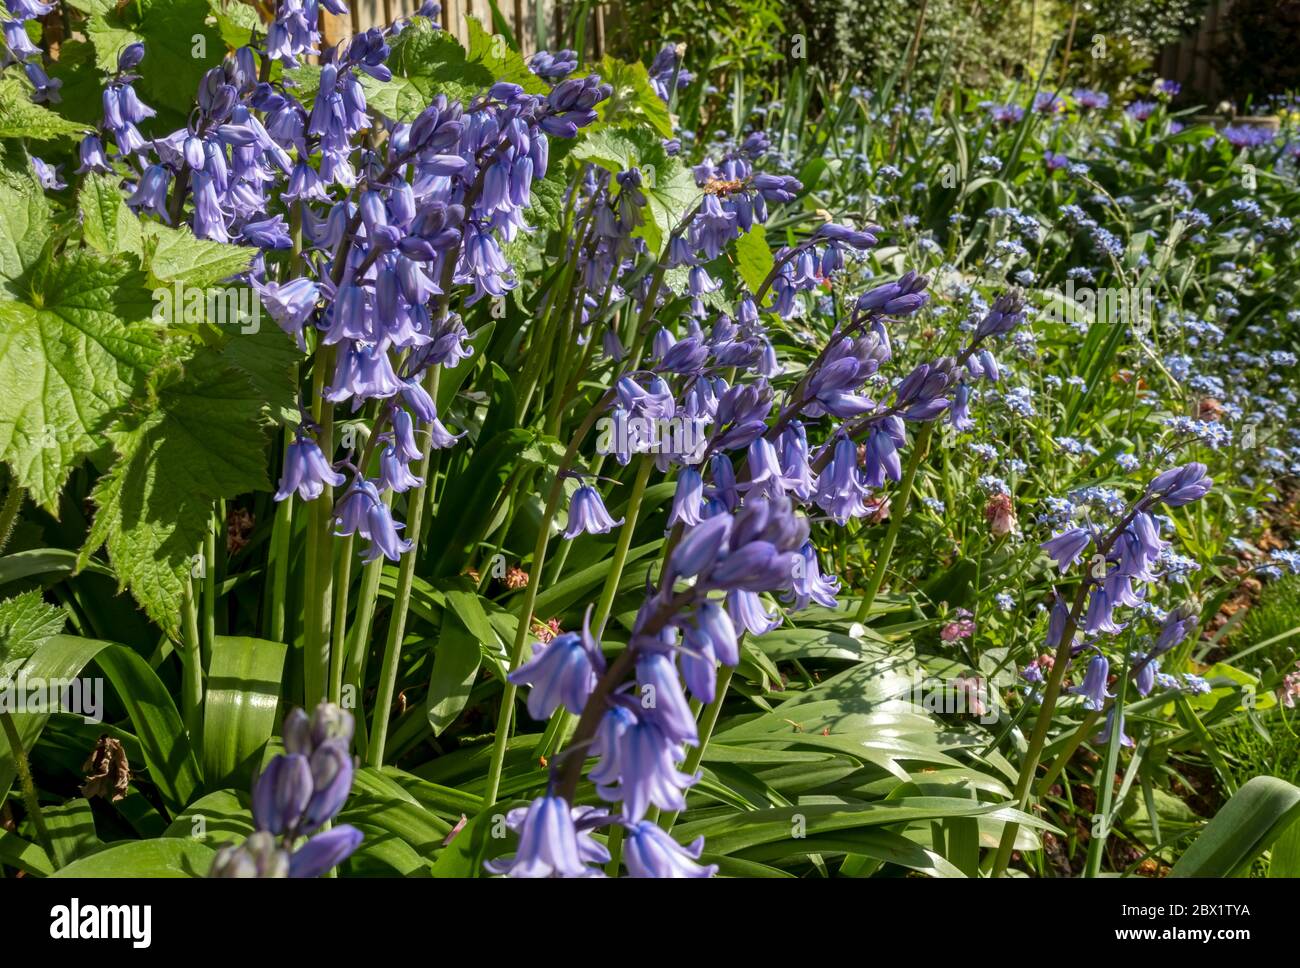 Gros plan des bleuets bluebell cultivés et Forget me nots fleurs bleues fleuries à la frontière du printemps Angleterre Royaume-Uni Grande-Bretagne Banque D'Images